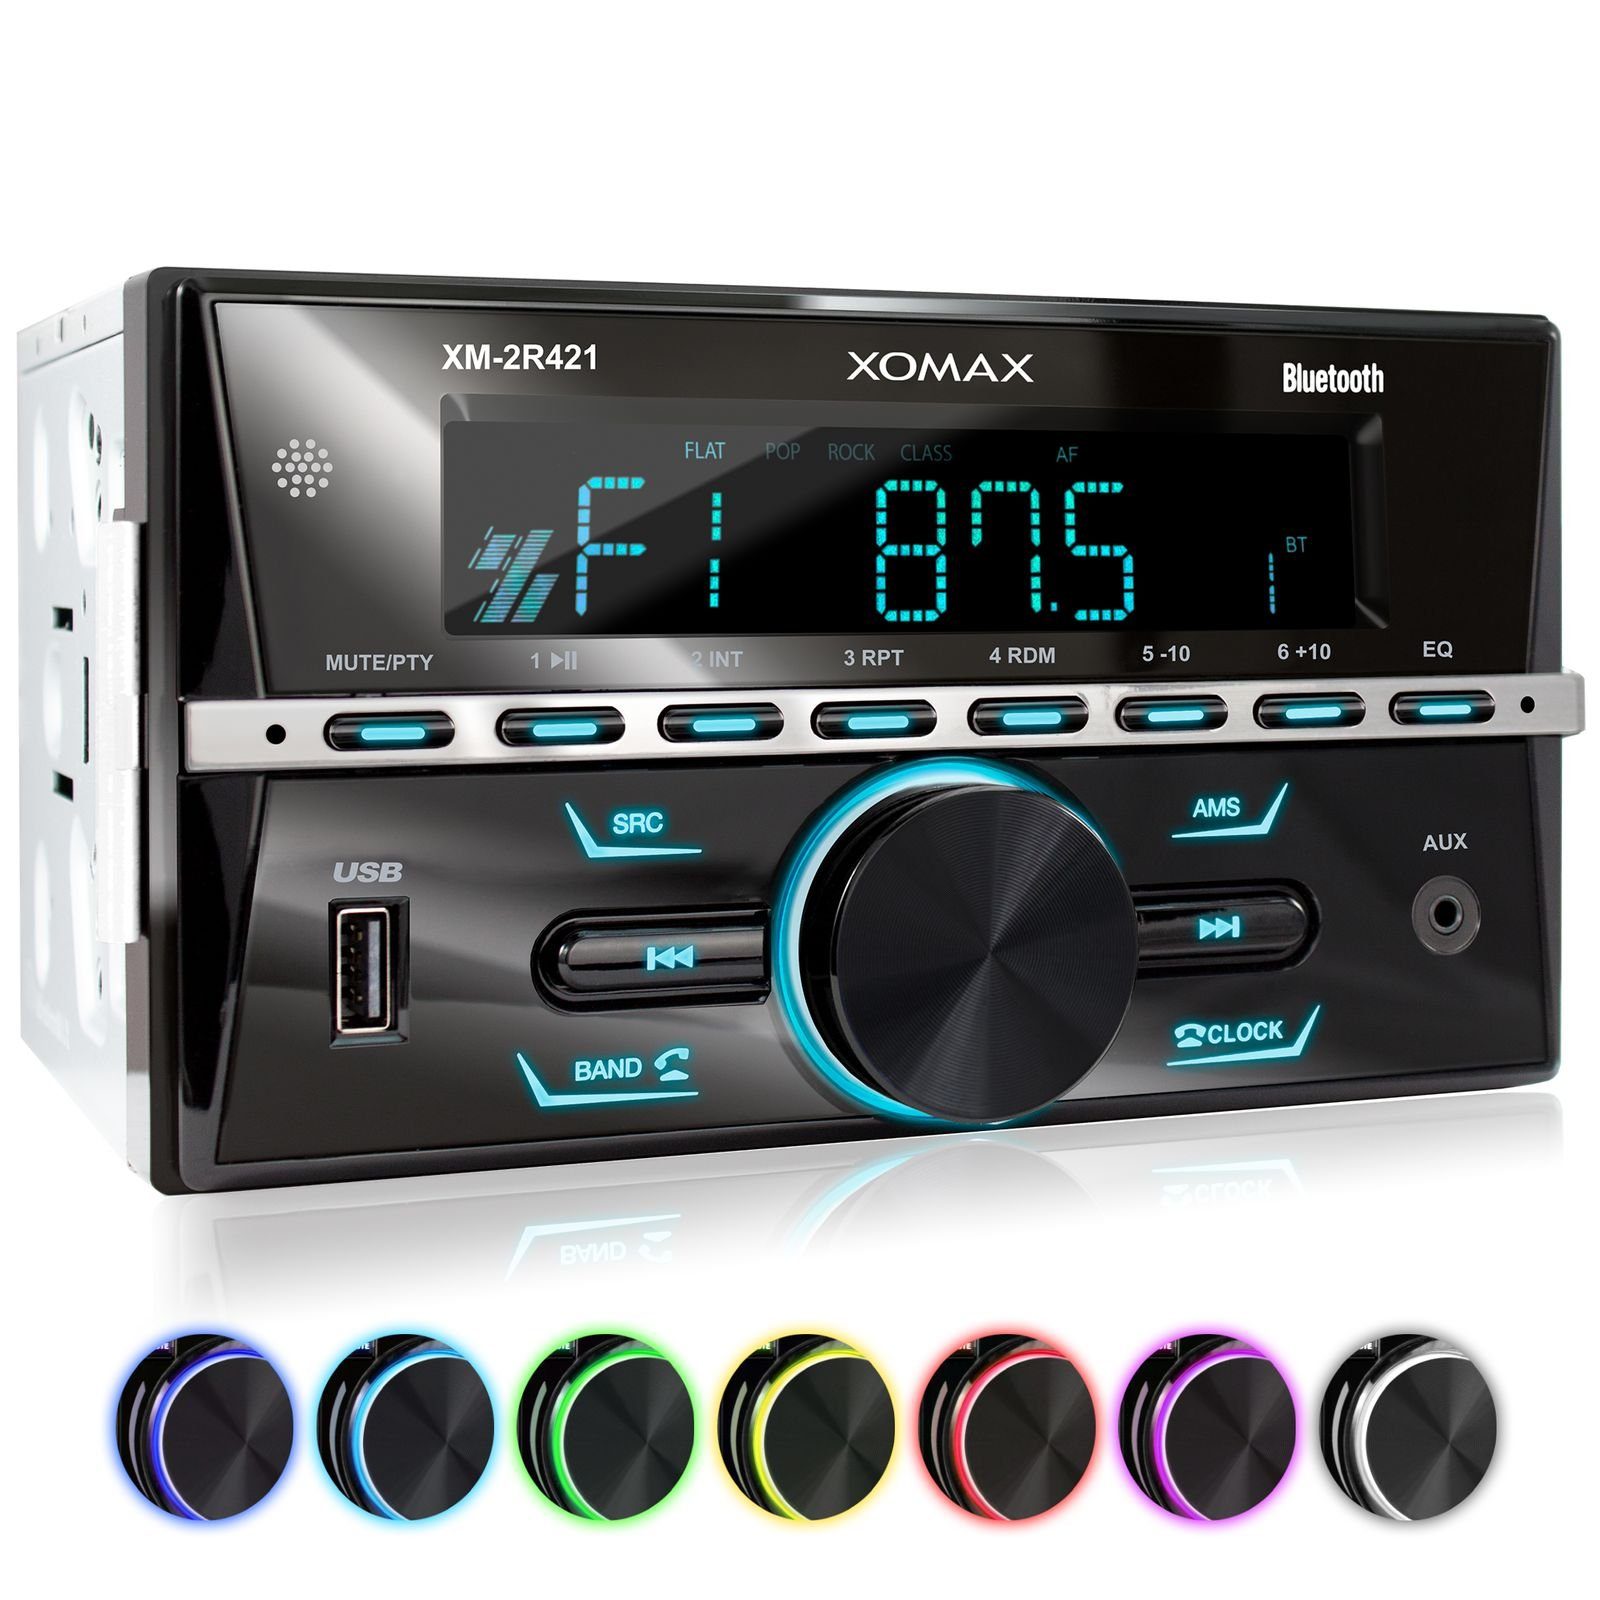 XOMAX XM-2R421 Autoradio mit Bluetooth, USB und AUX-IN, 2 DIN